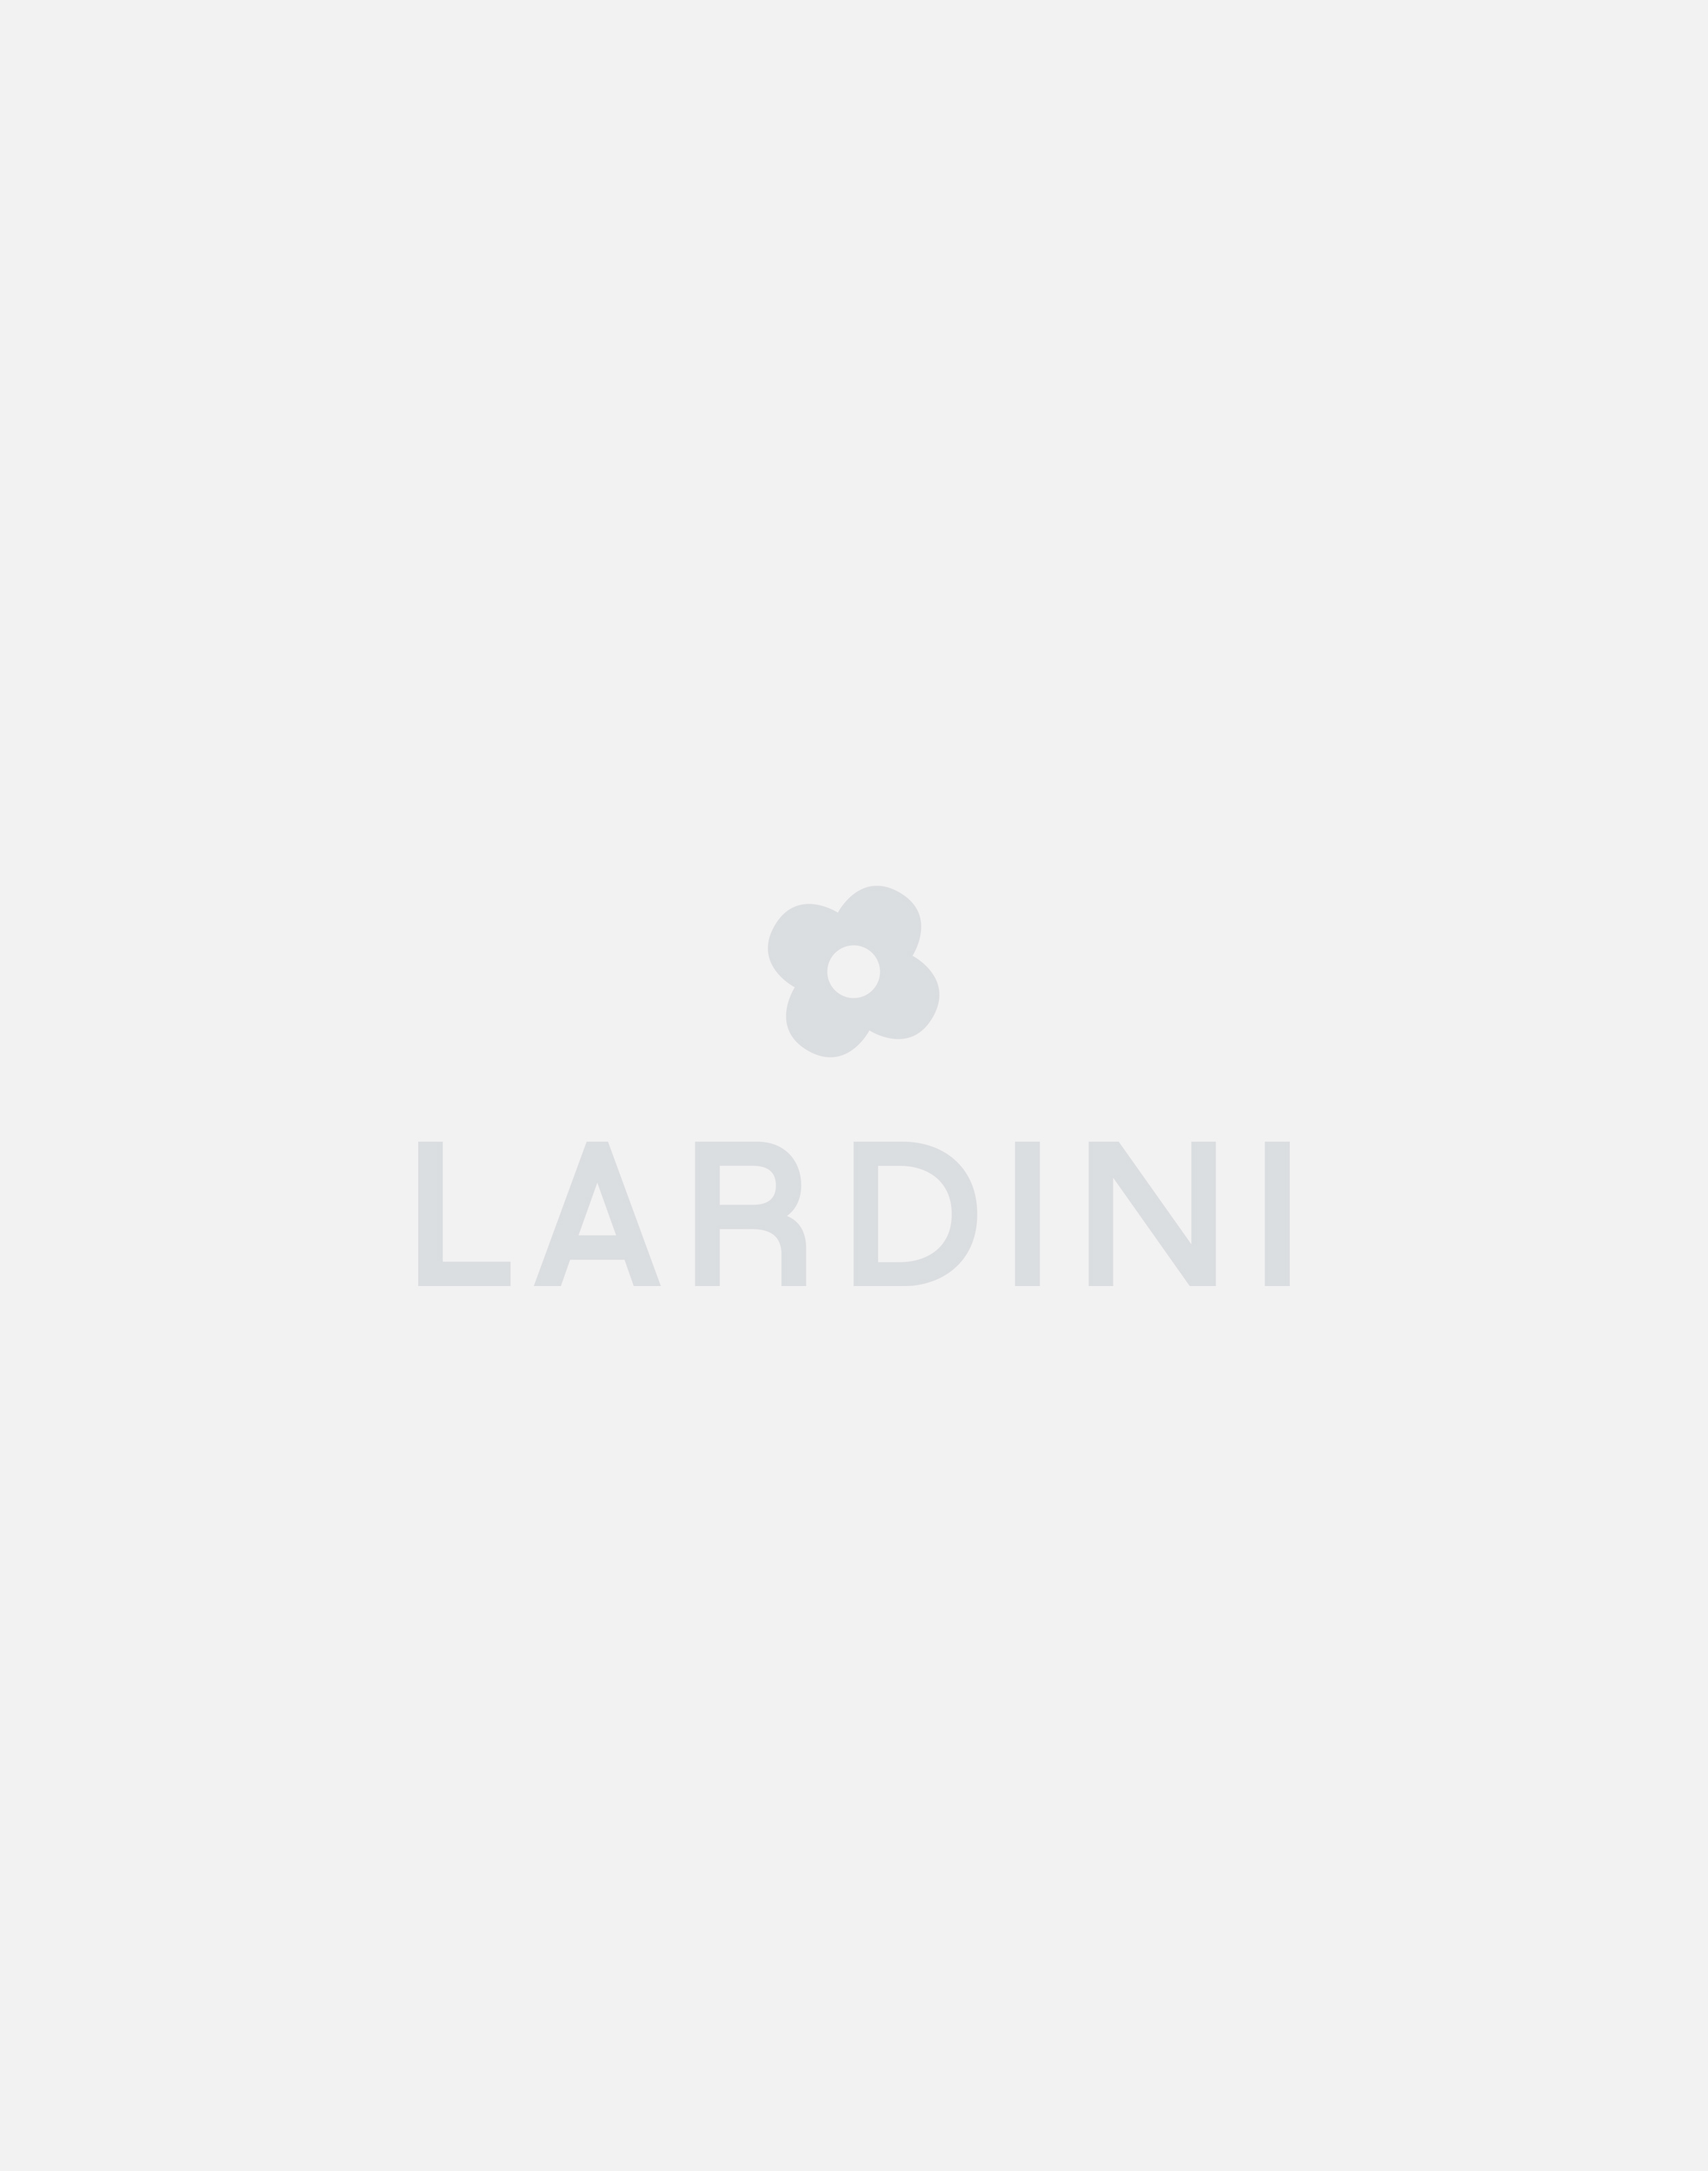 Cream trousers - Luigi Lardini capsule 1